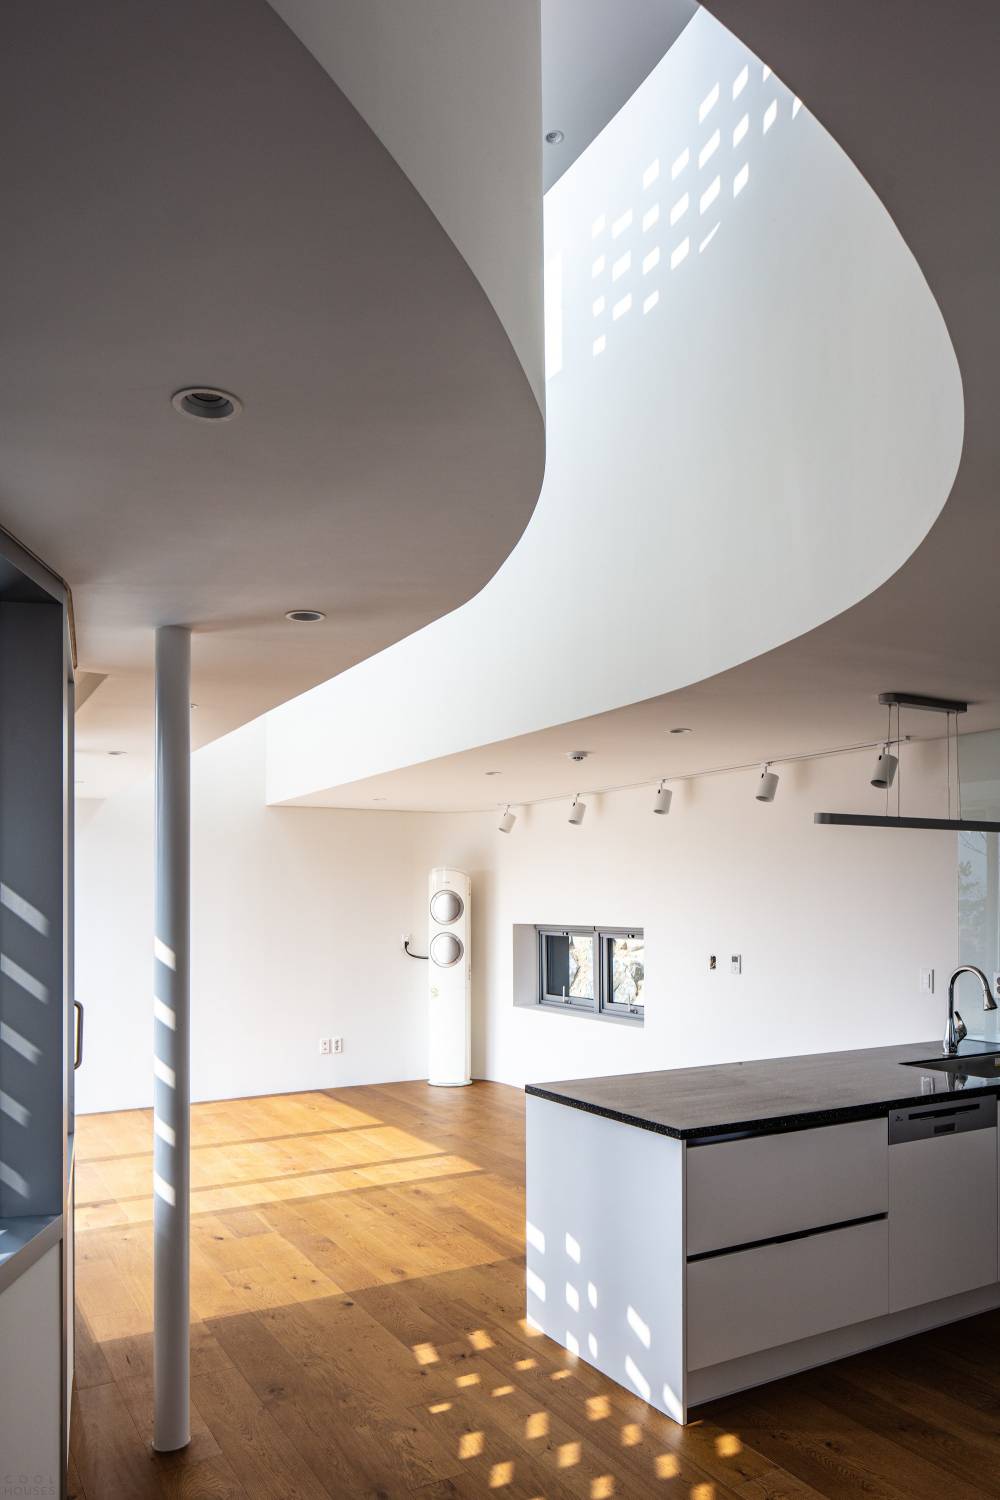 Кирпичный дом с футуристическим дизайном и минималистичной атмосферой